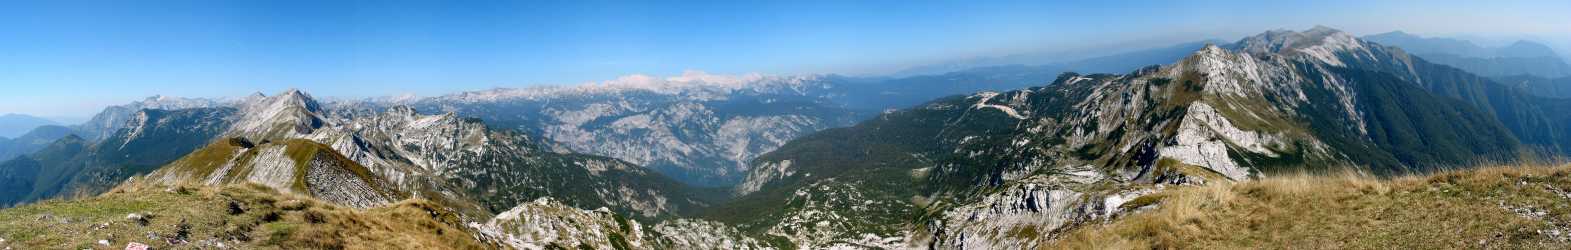 Pogled na sever - levo in desno greben Spodnjih Bohinjskih gora, v sredini v ozadju Triglav